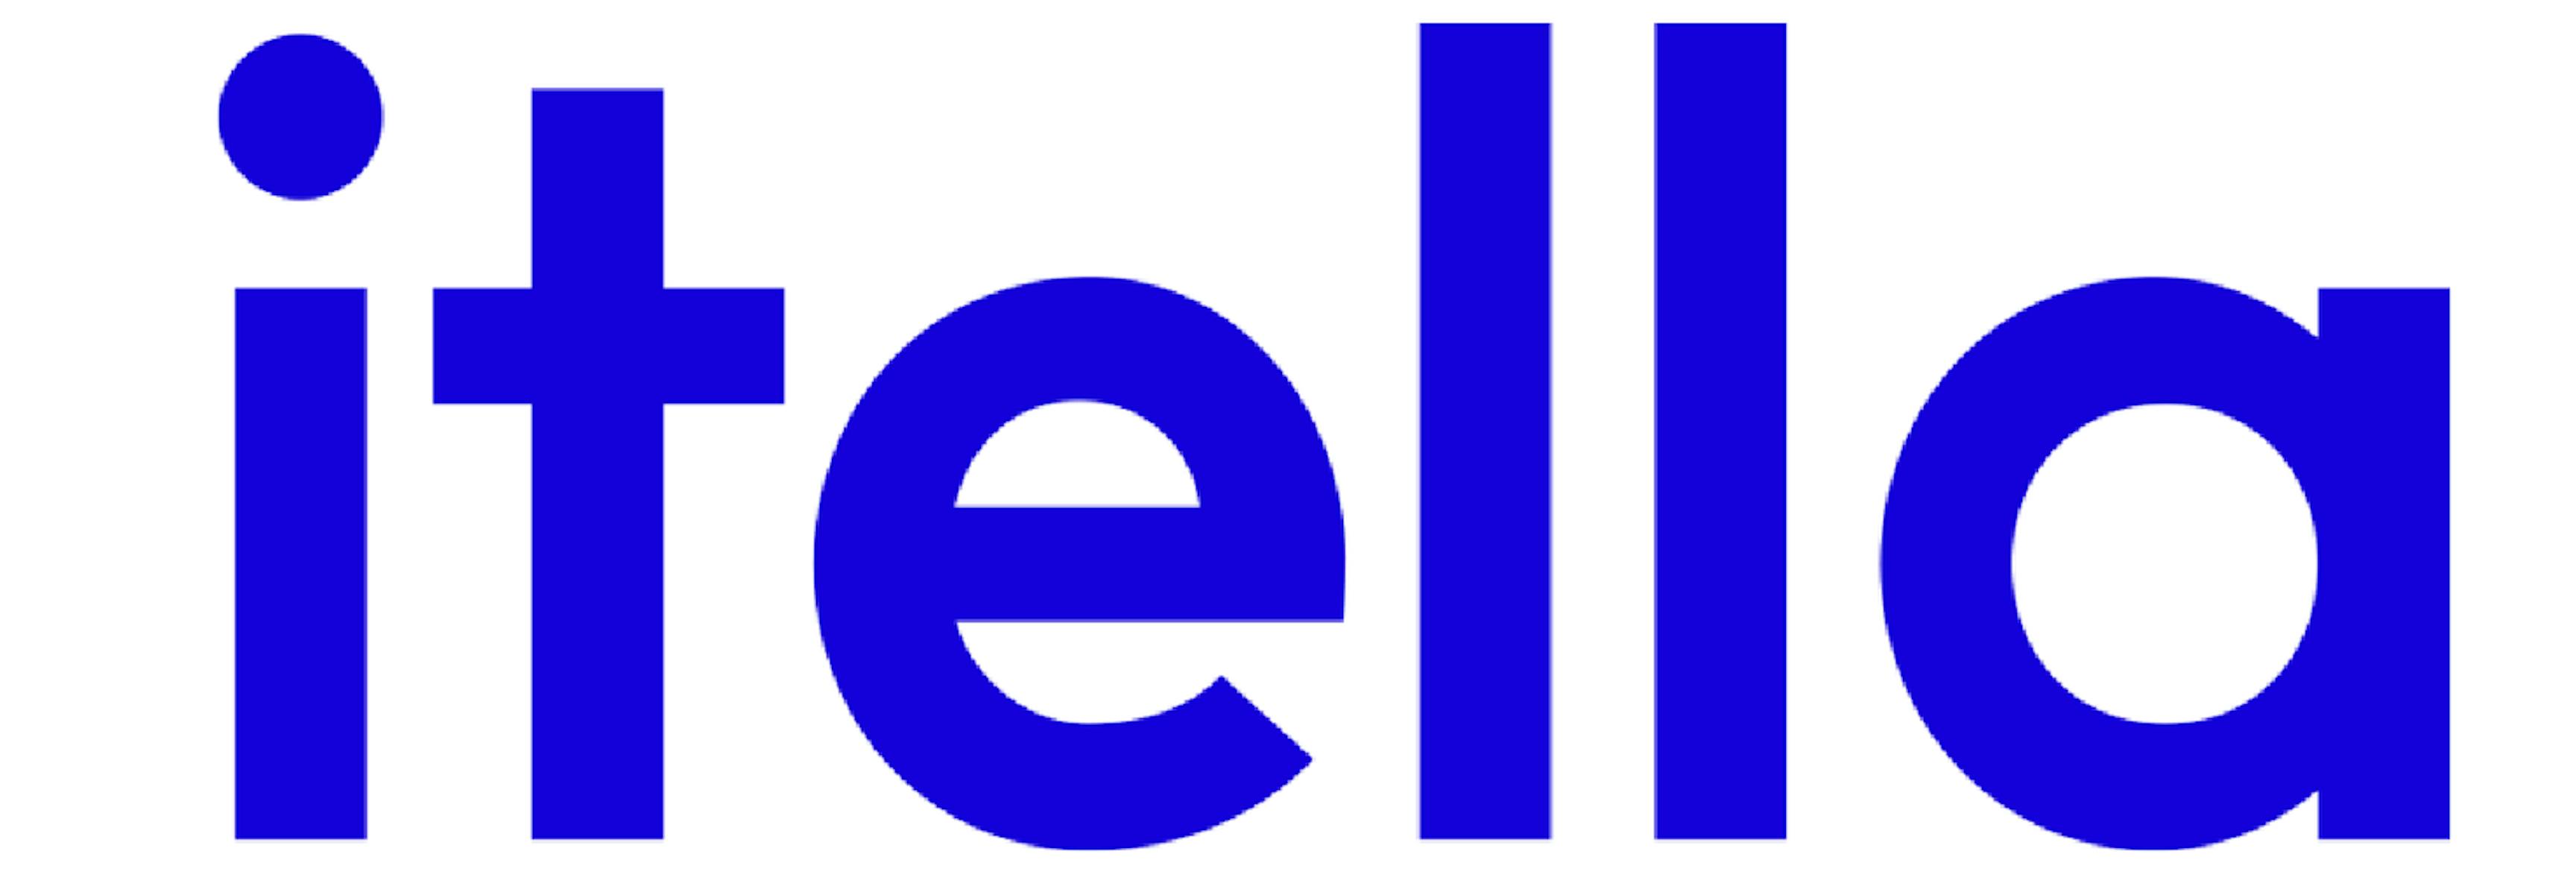 Itella logo